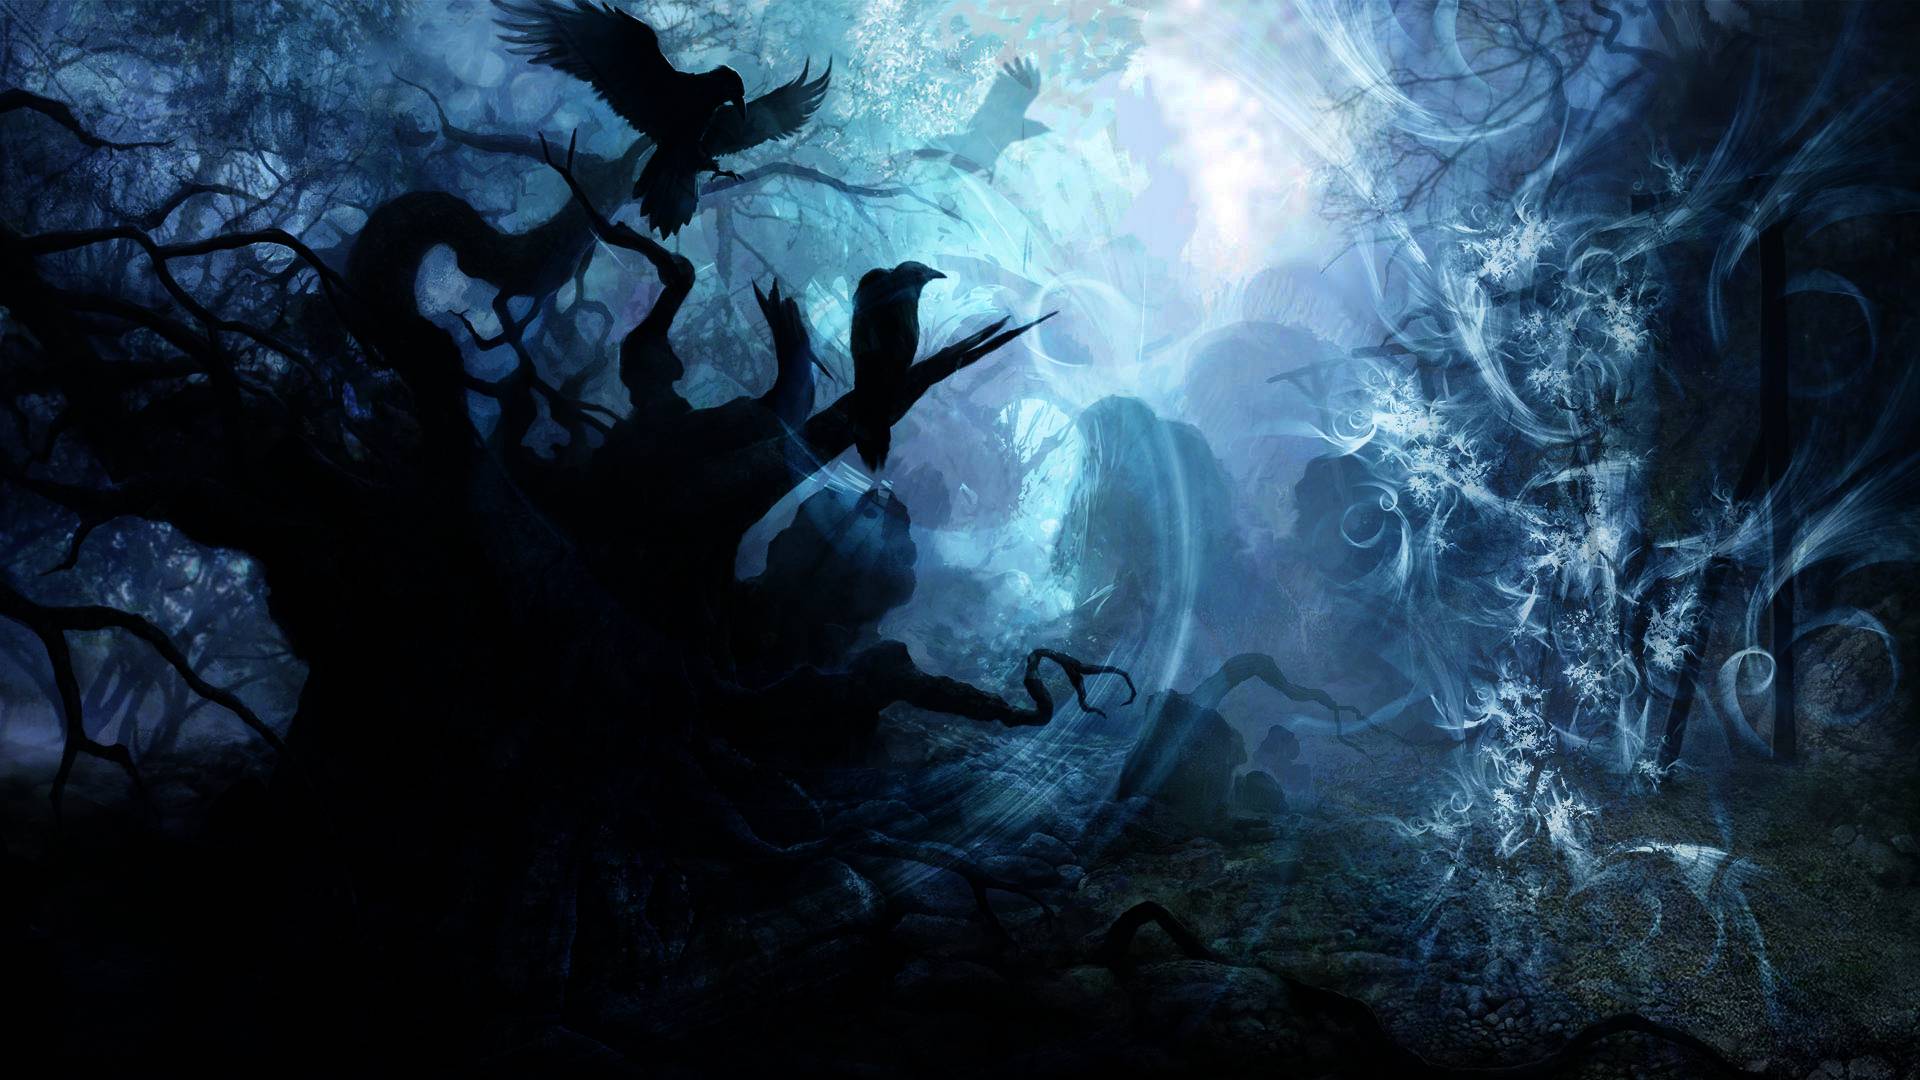 Final fantasy xi wallpaper, Hdscreen dark souls